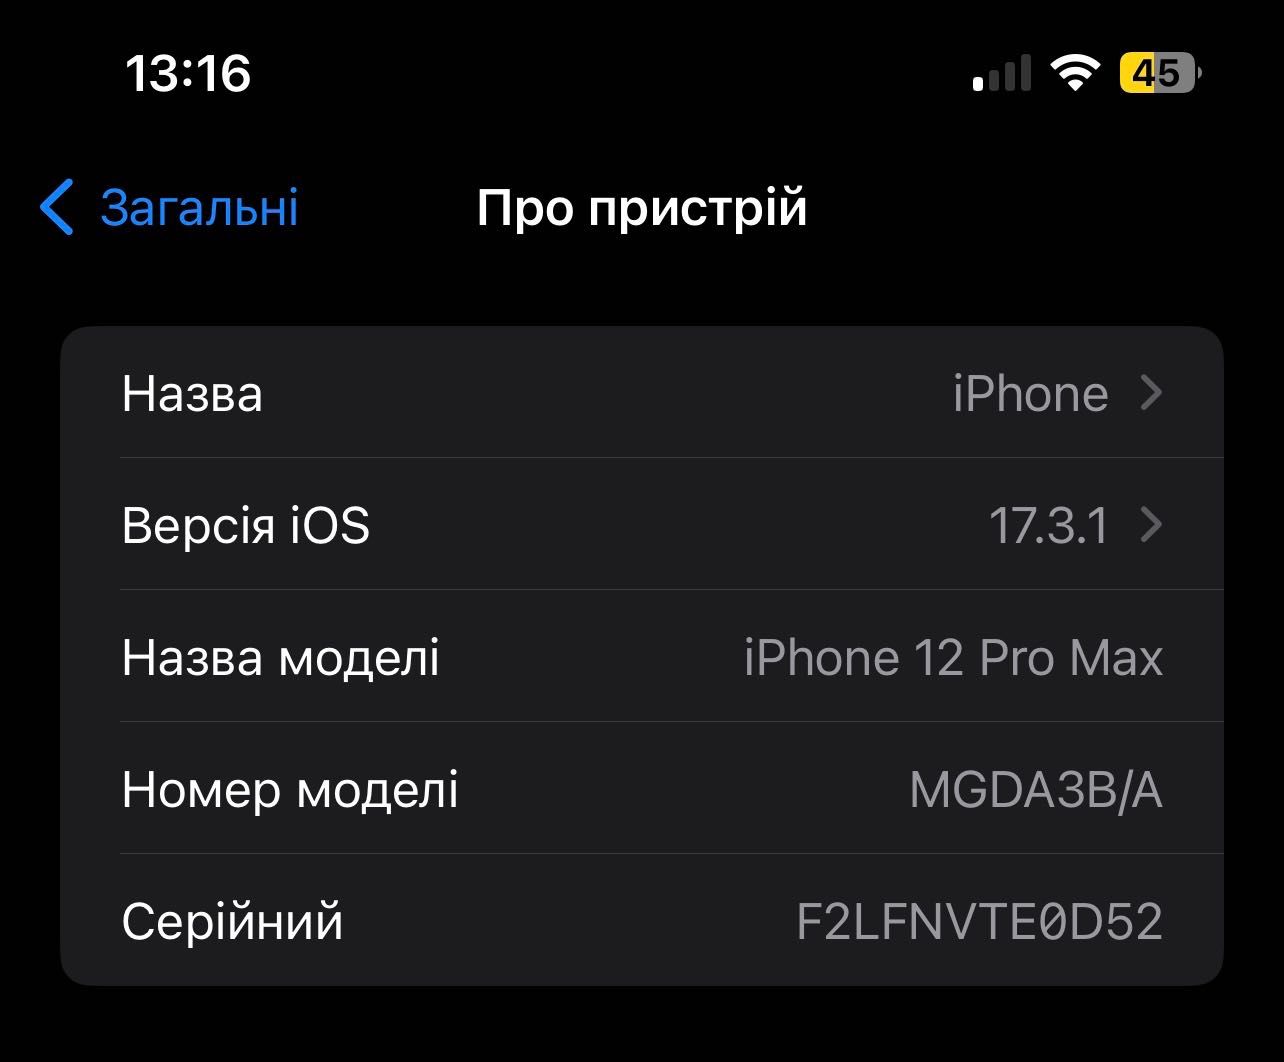 iPhone 12 pro max